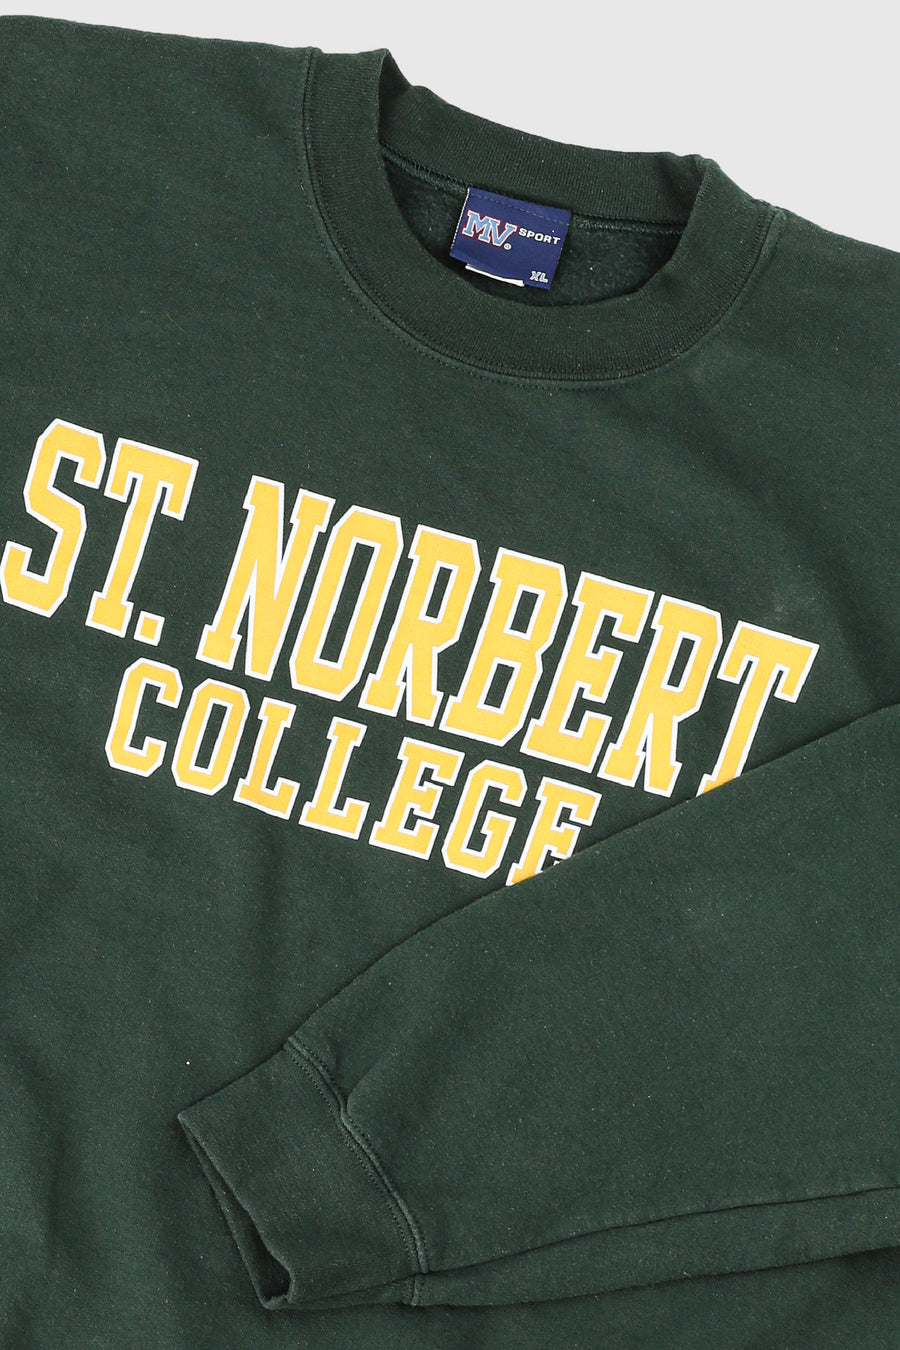 Vintage St. Norbert College Sweatshirt